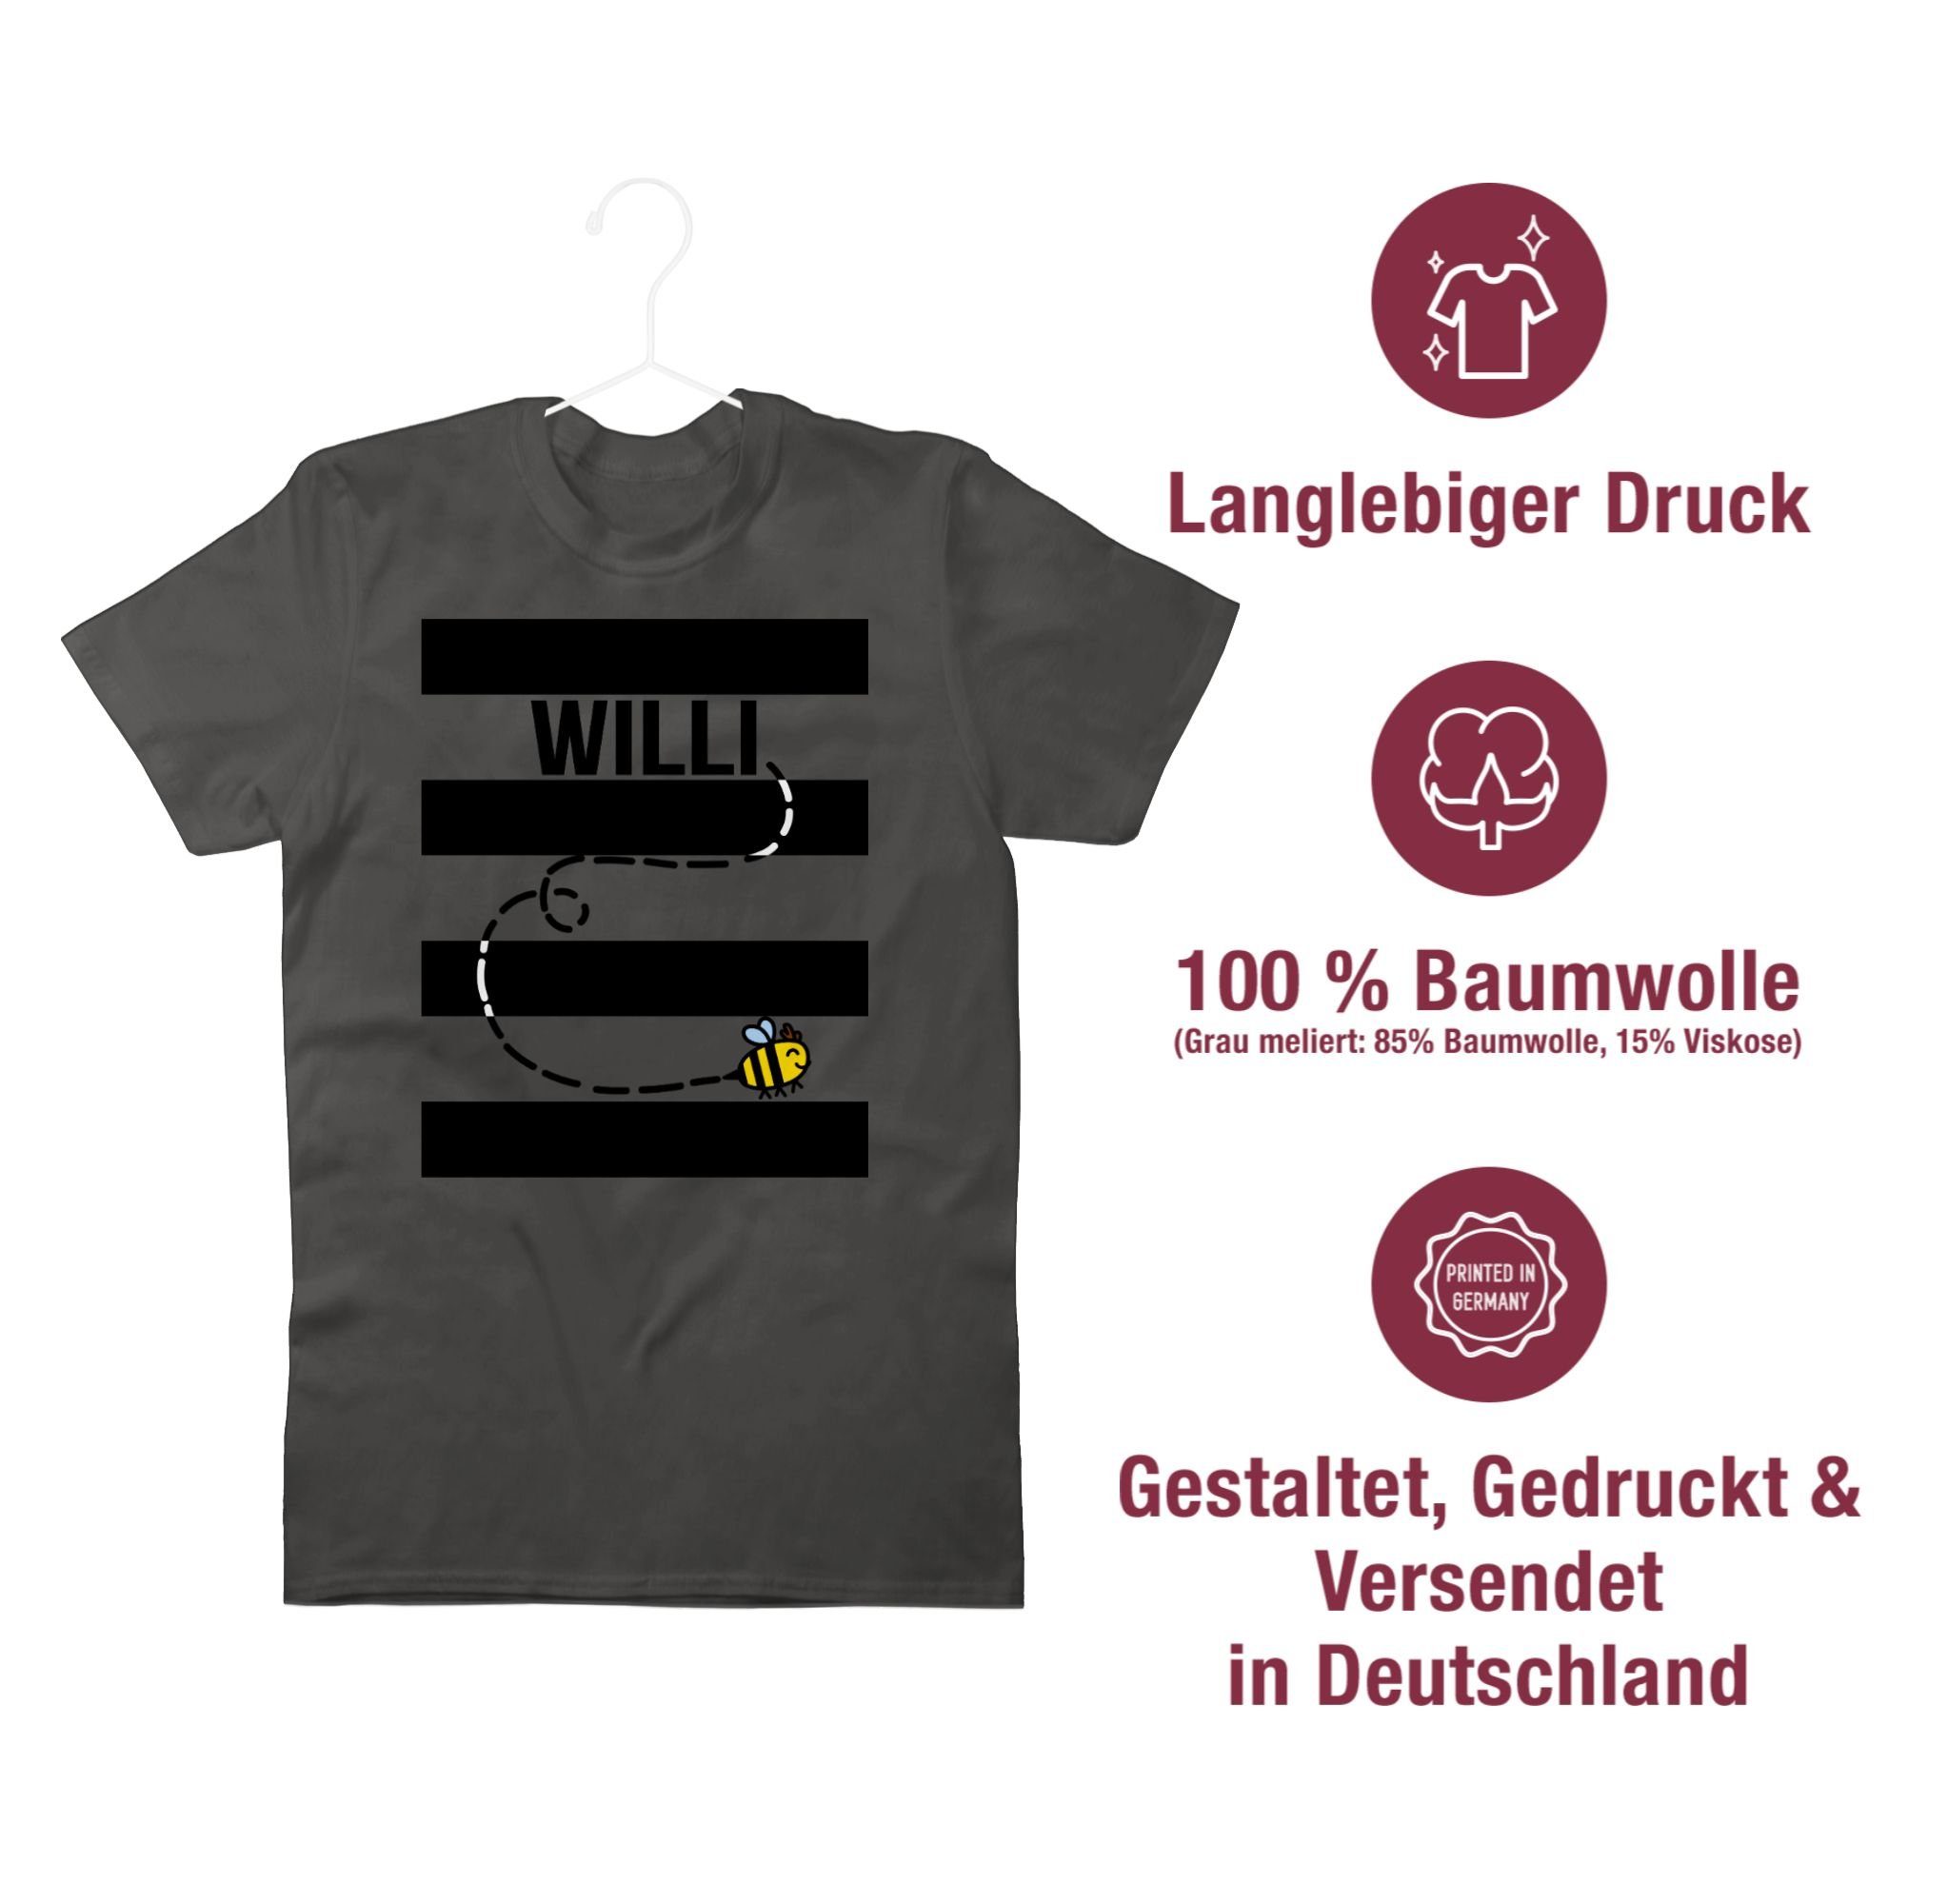 Dunkelgrau Willi Outfit 2 Kostüm Shirtracer Bienen T-Shirt Karneval